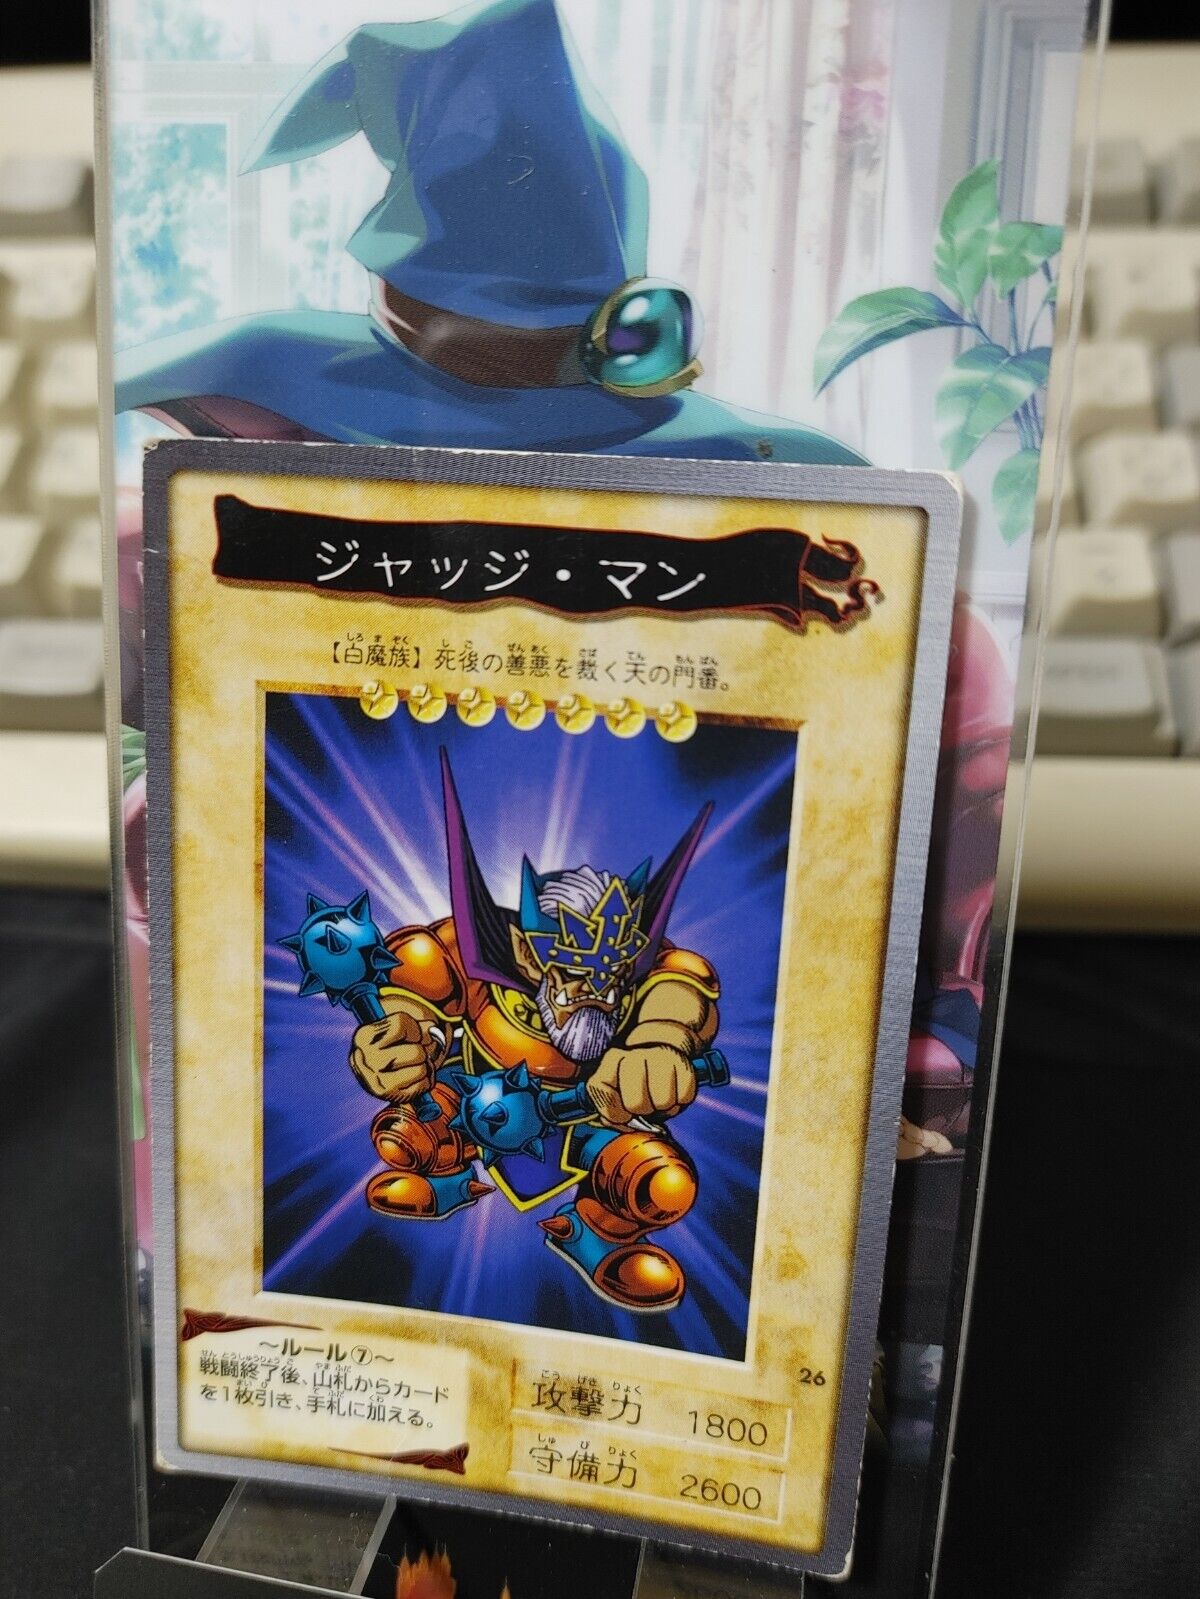 Yu-Gi-Oh Bandai Judge Man Carddass Card #26 Japanese Retro Japan Rare